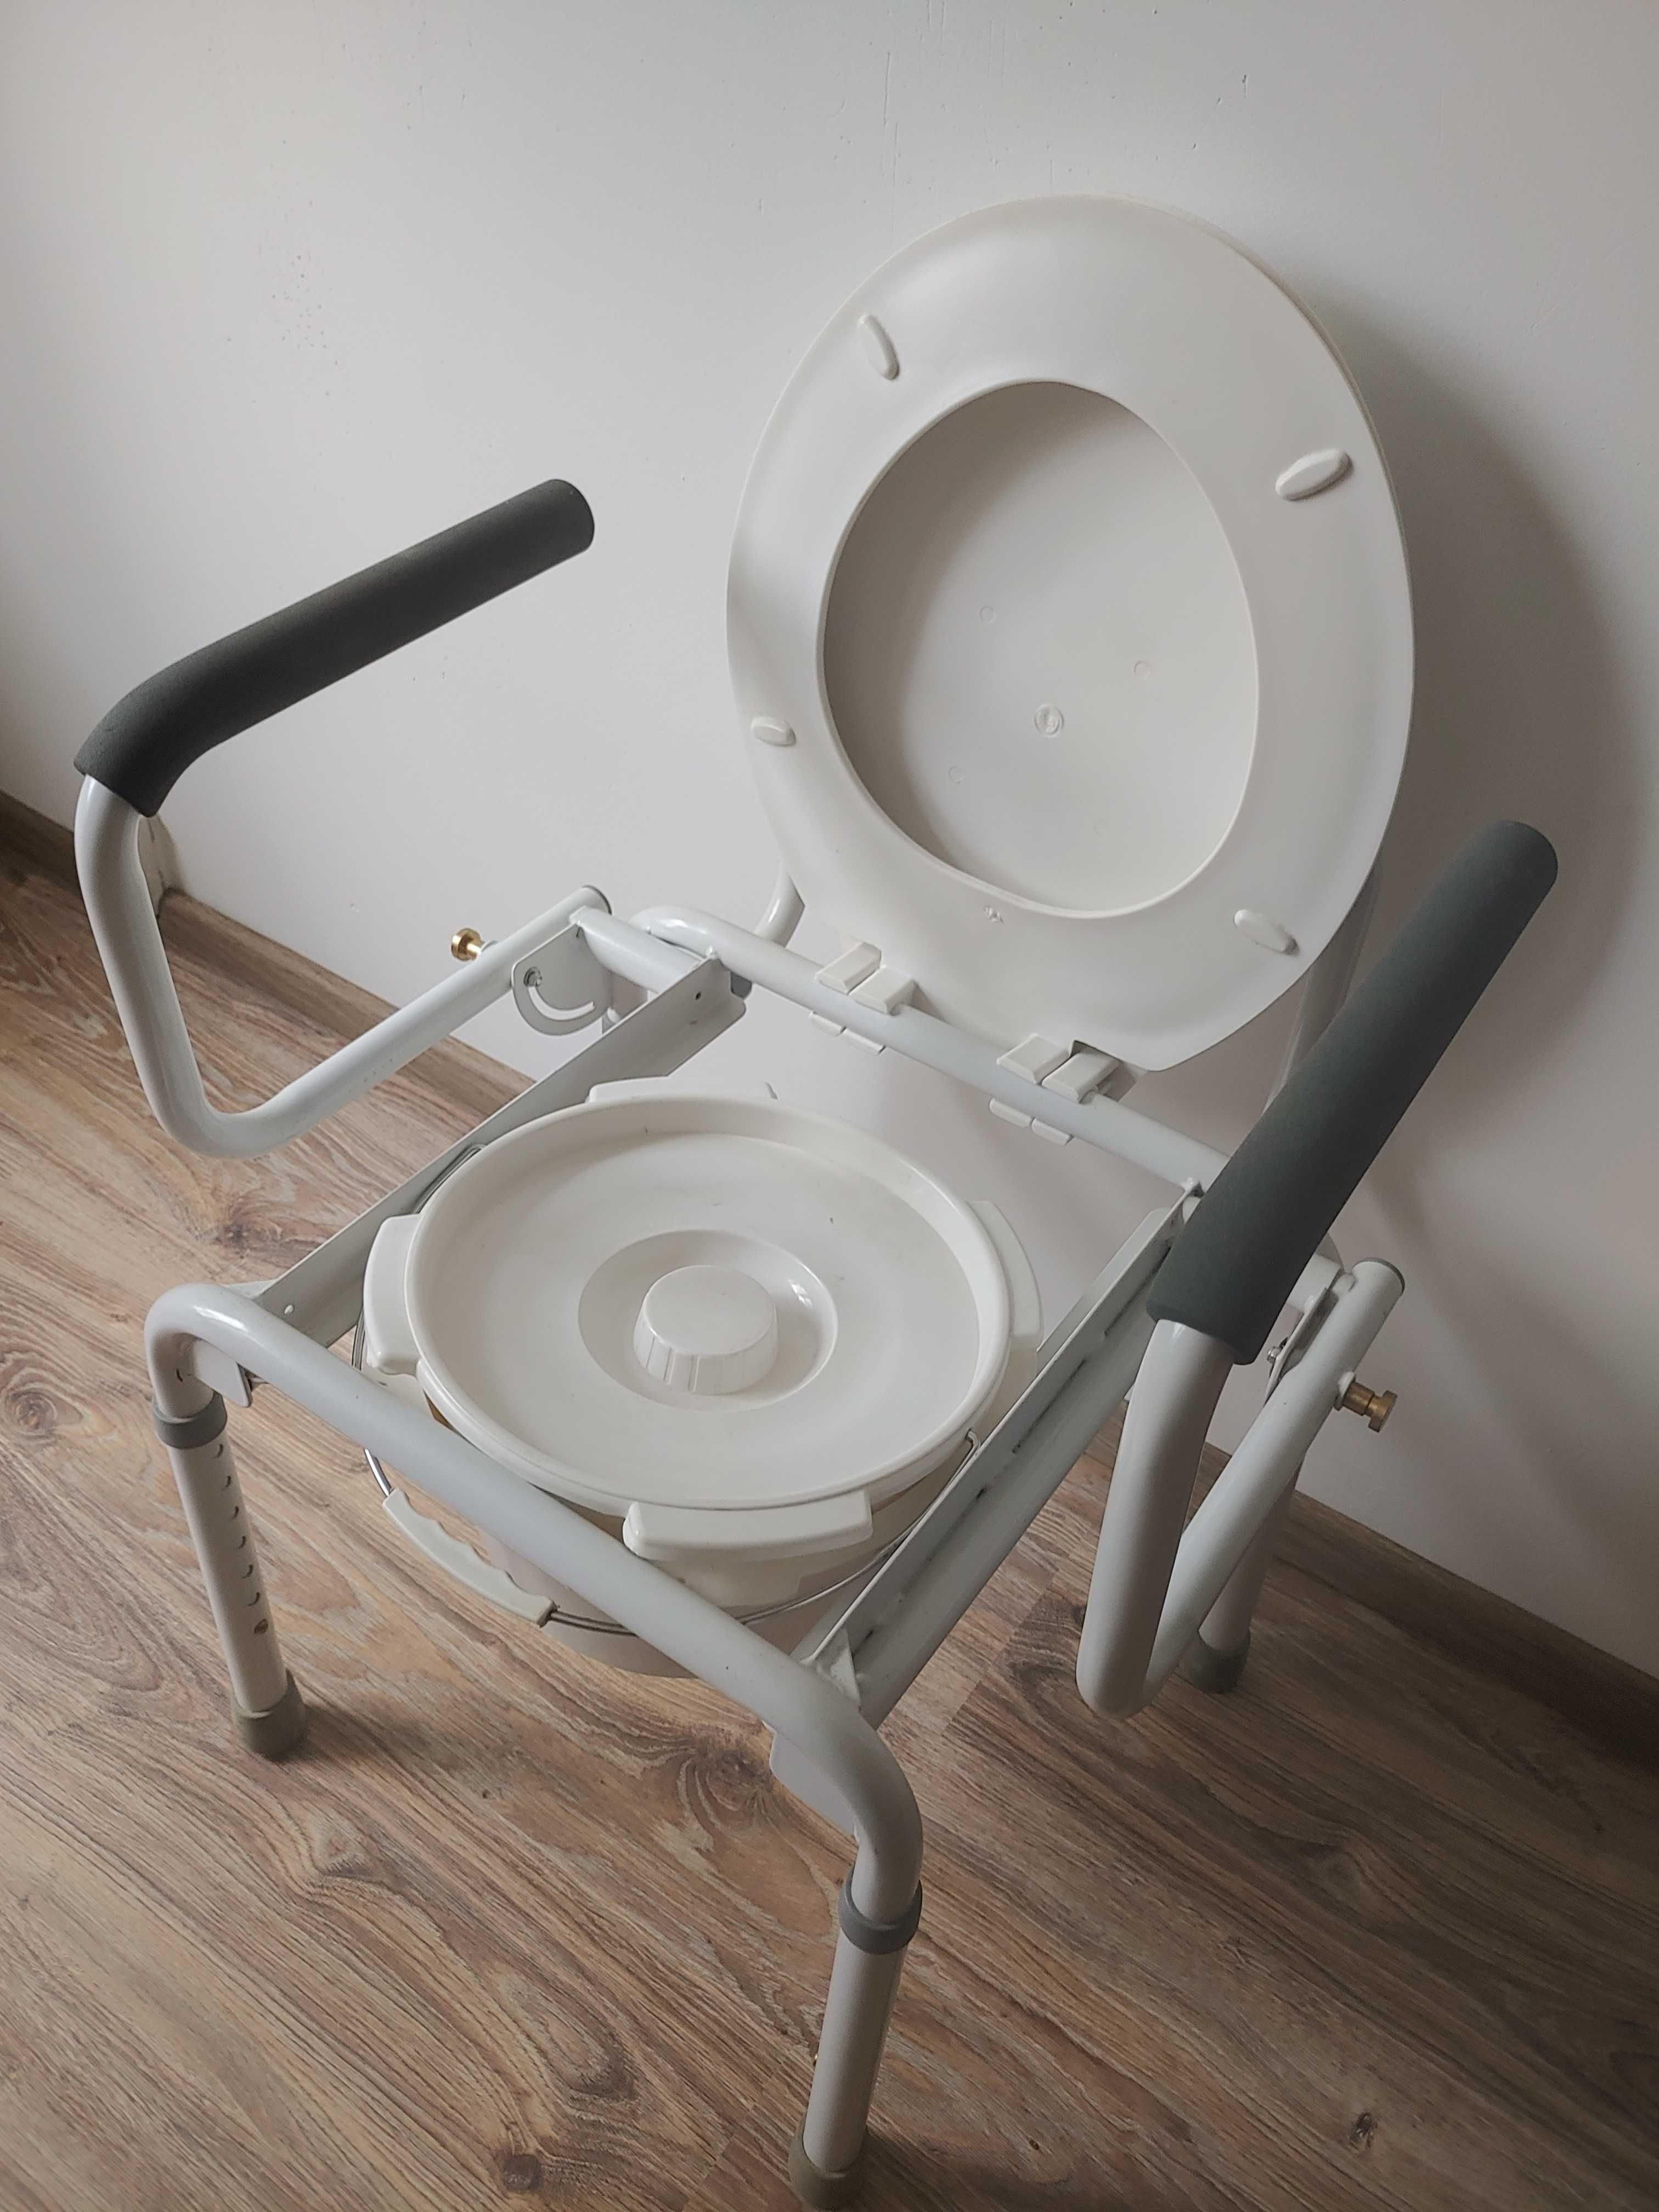 Krzesło toaletowe przenośne sanitarne WC Vermeiren Stacy